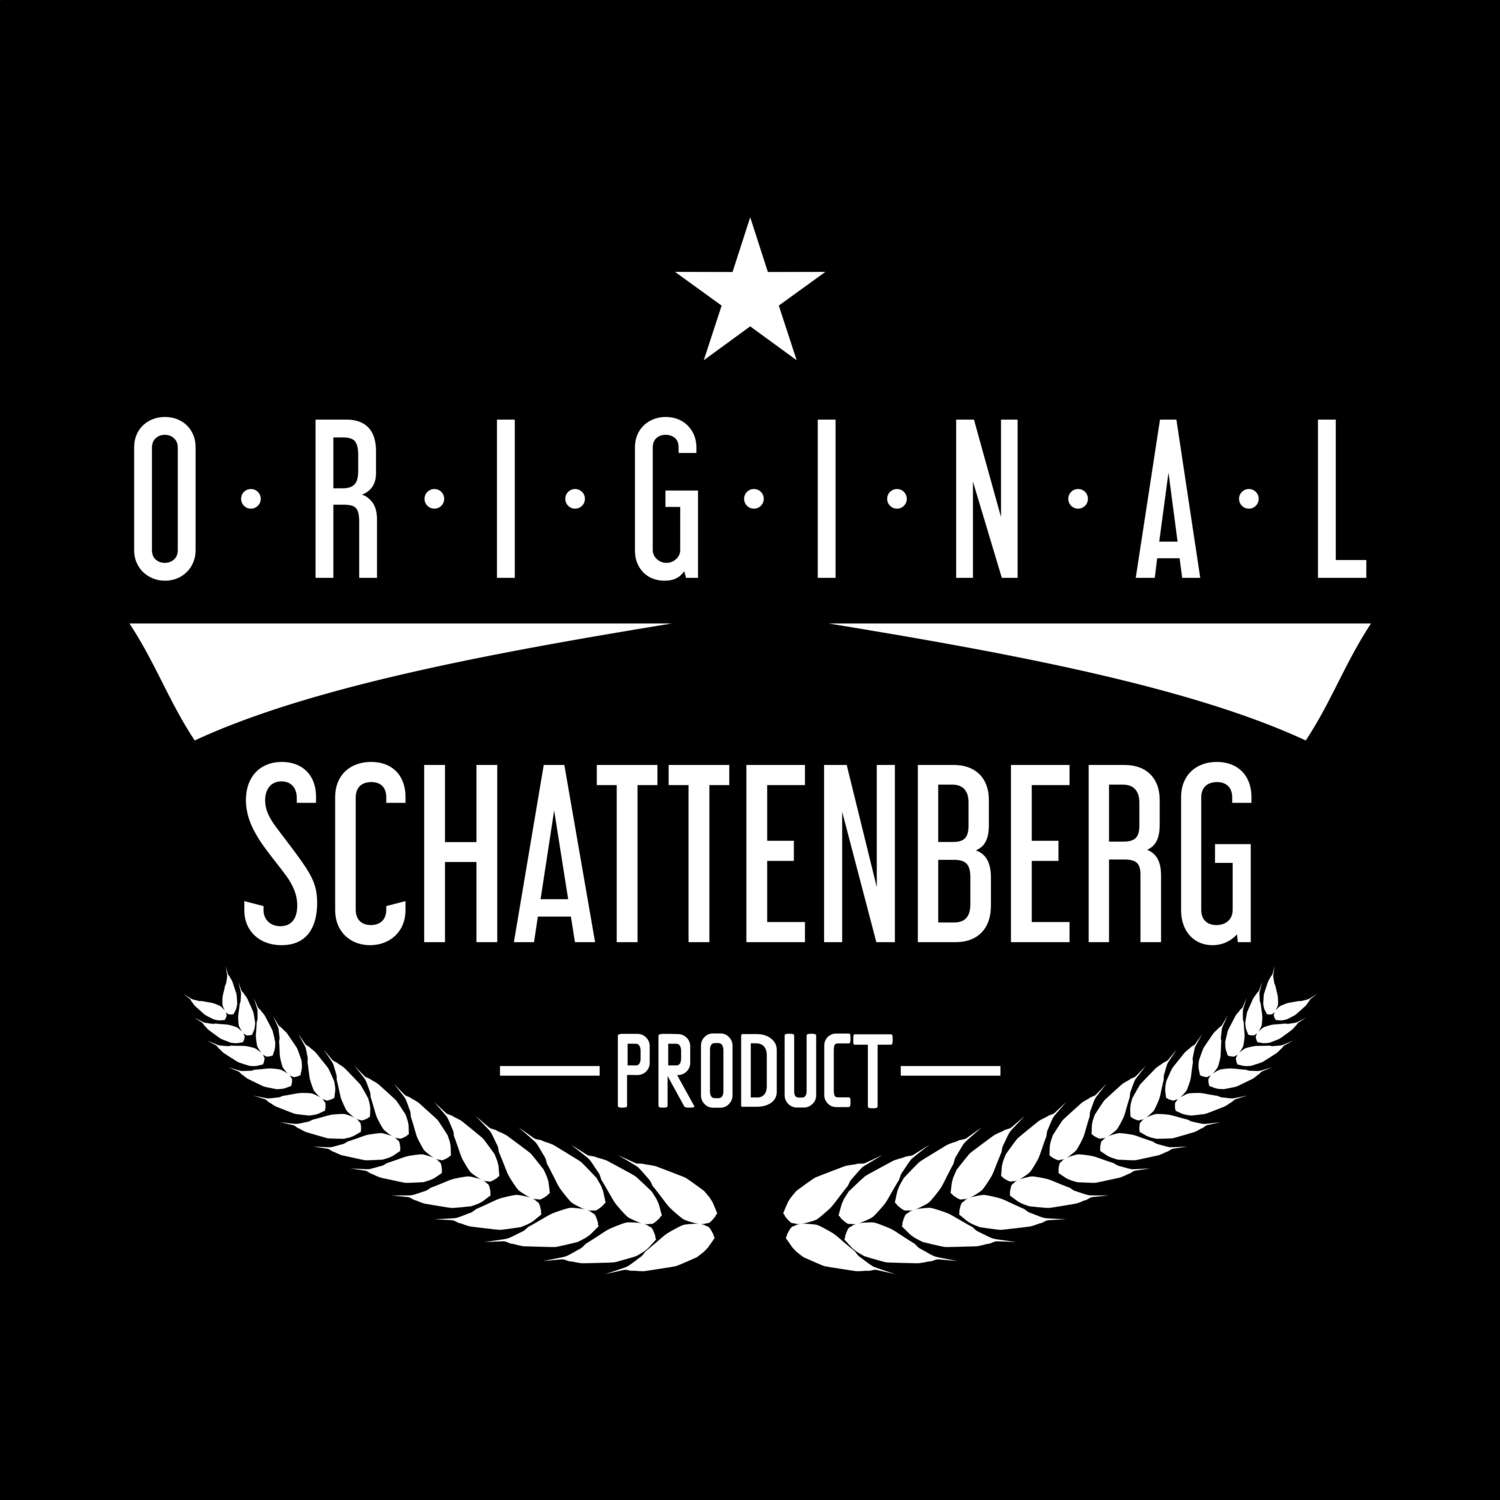 Schattenberg T-Shirt »Original Product«